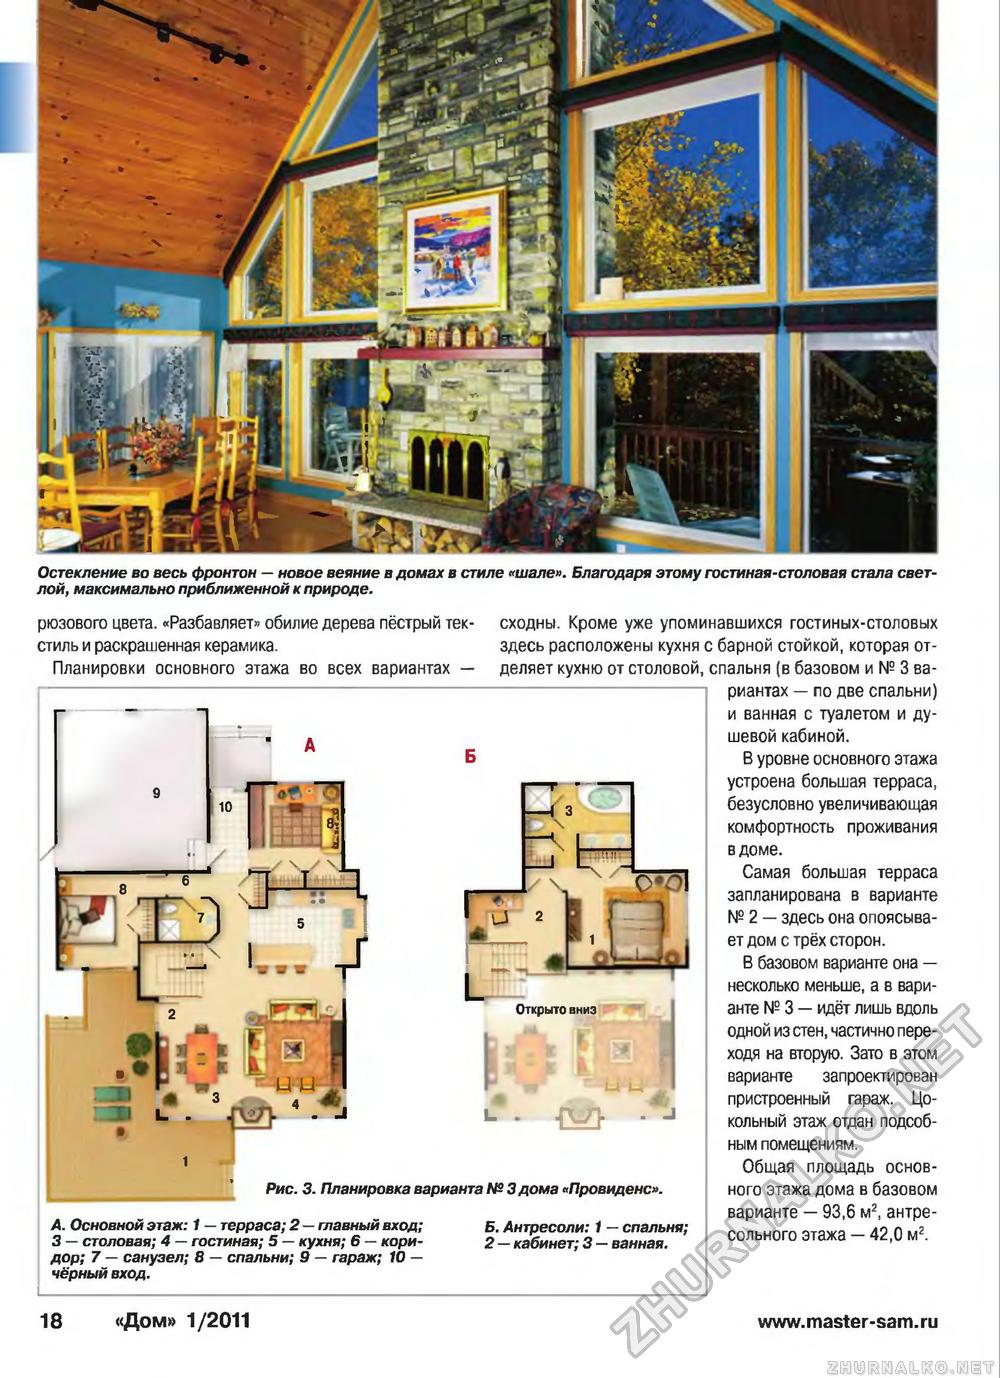 Дом 2011-01, страница 18